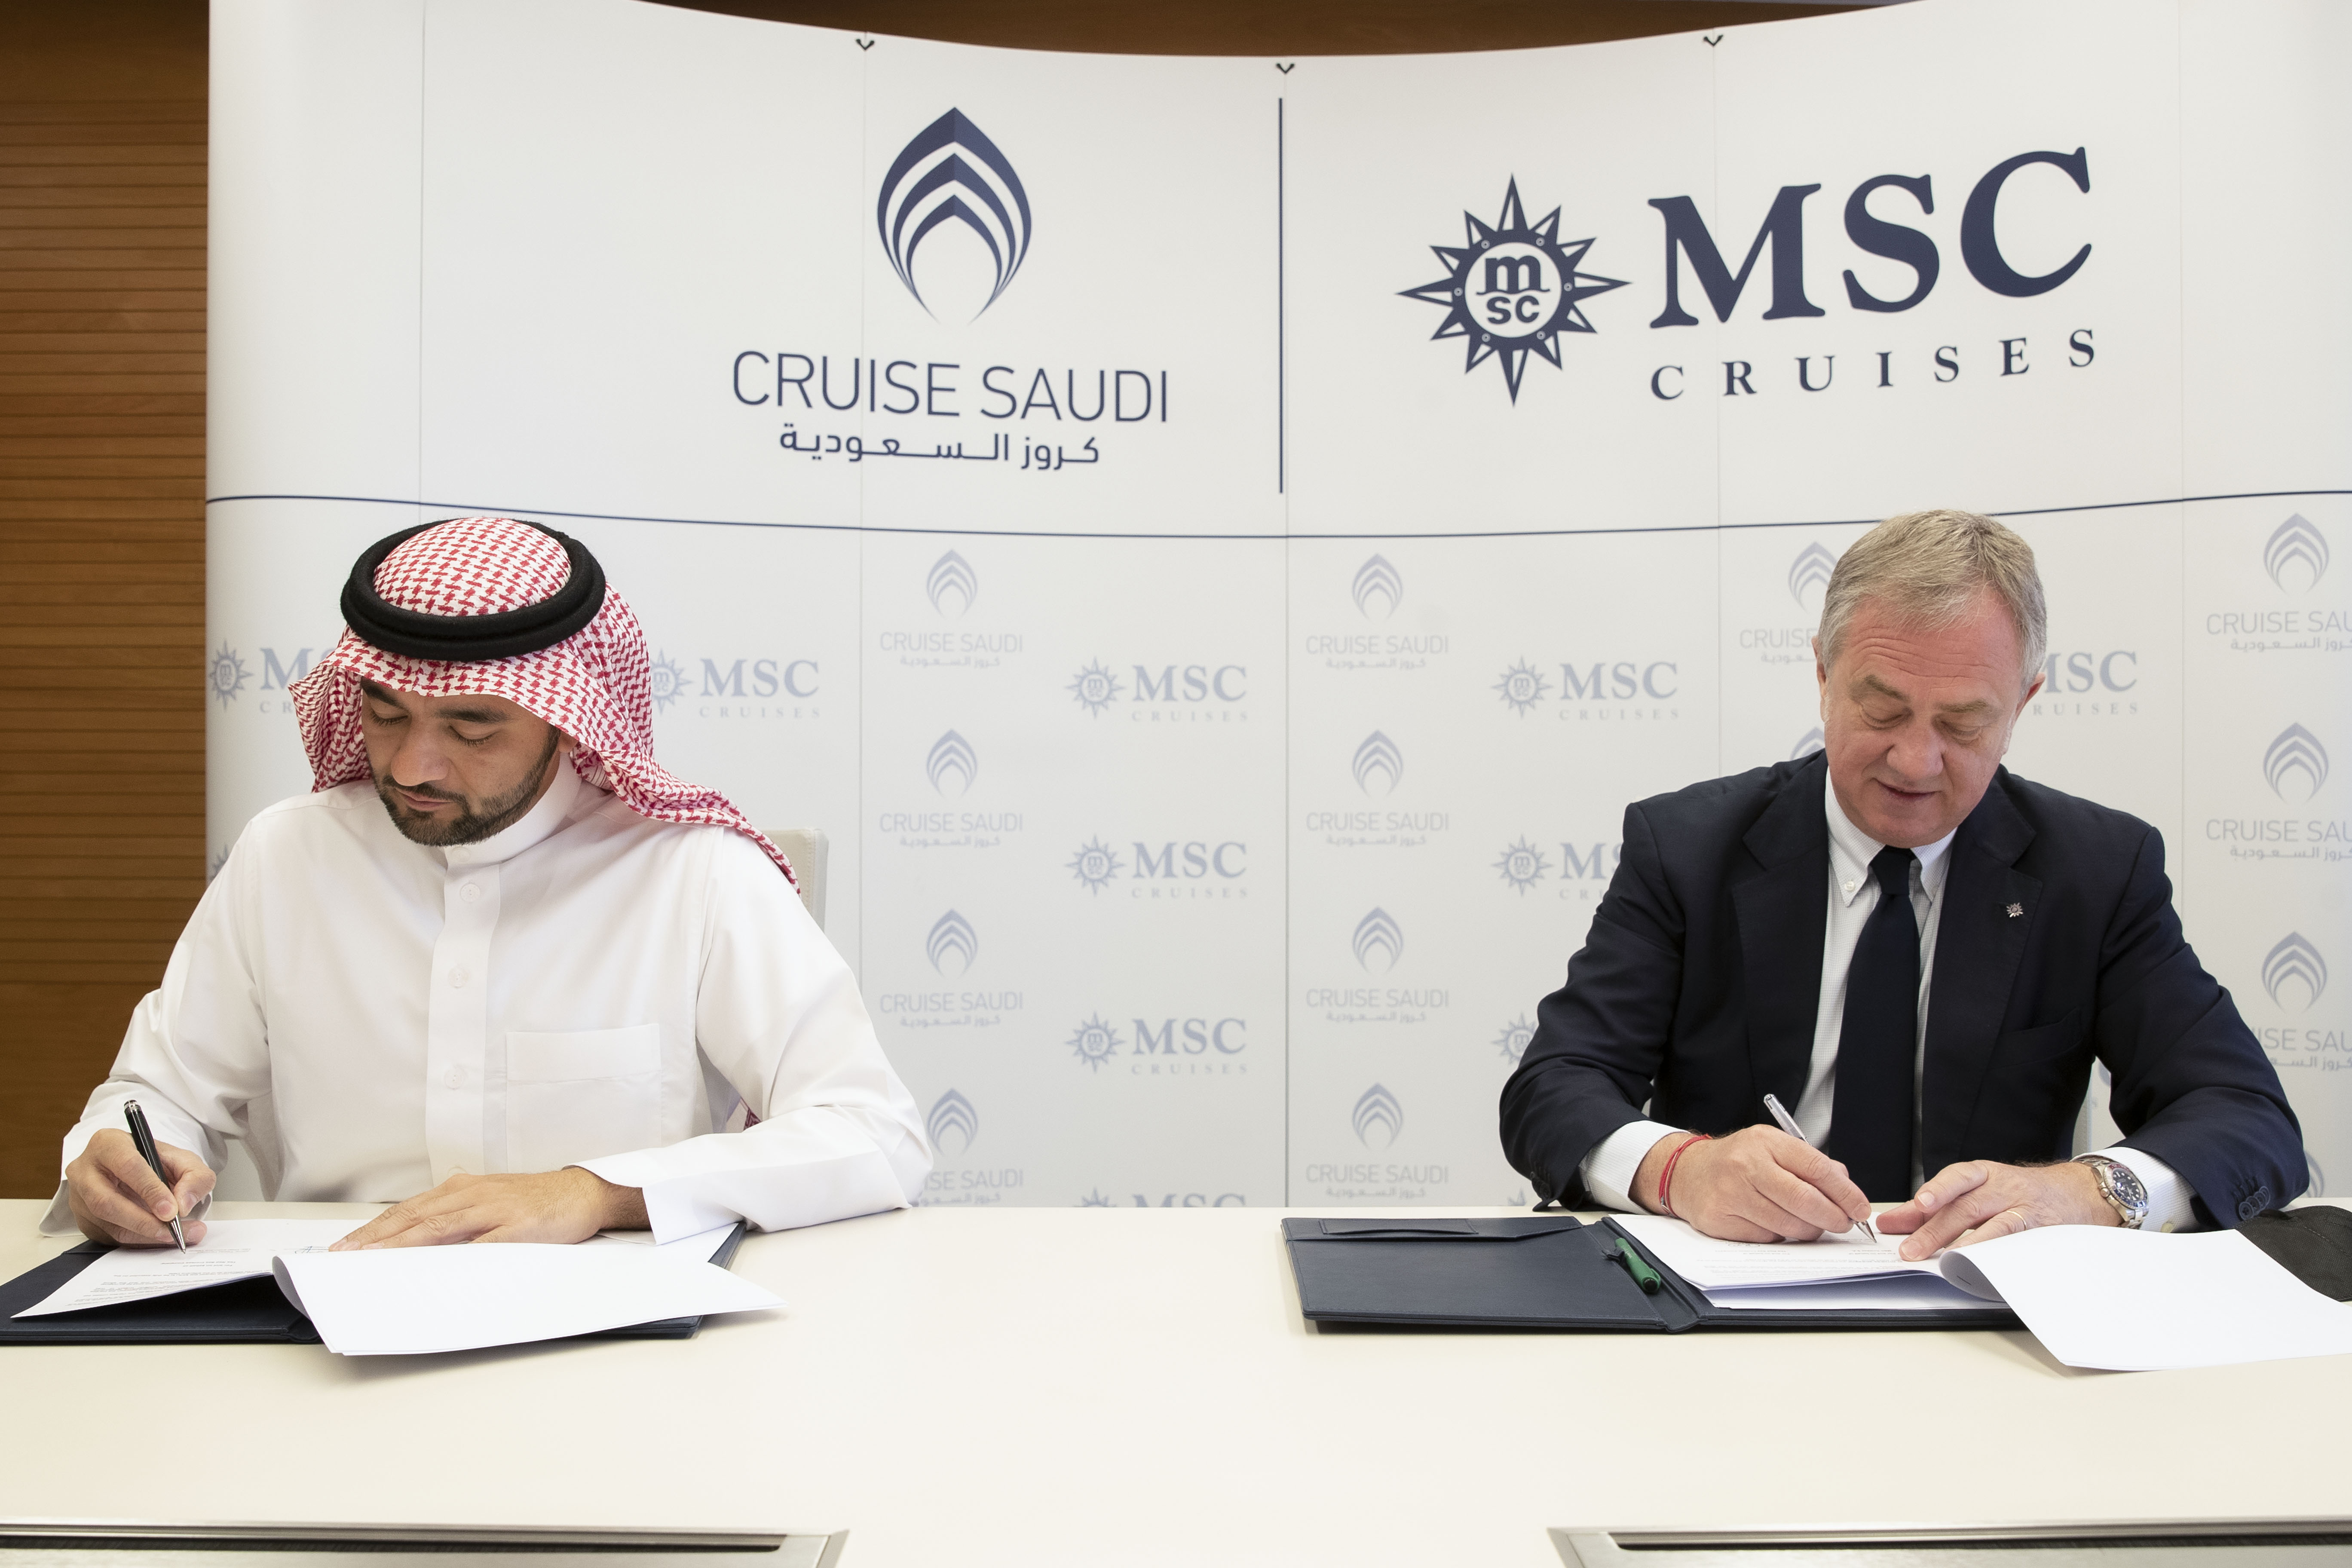 MSC Cruzeiros assina acordo histórico com a Cruise Saudi